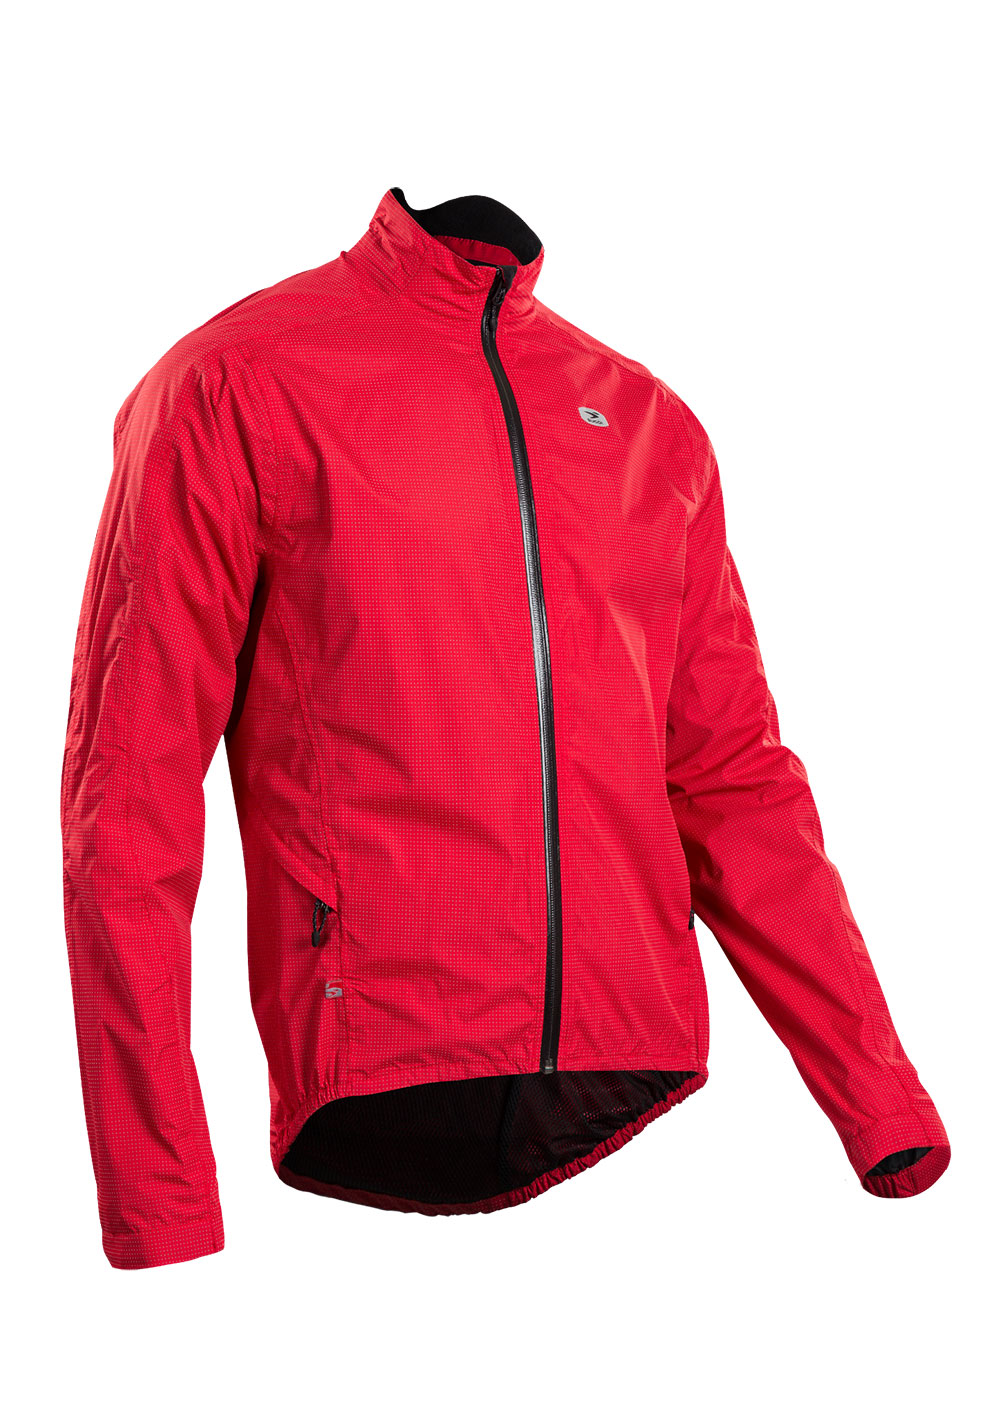 Куртка Sugoi ZAP BIKE, светоотражающая ткань, мужская, CHI (красная), XL фото 1